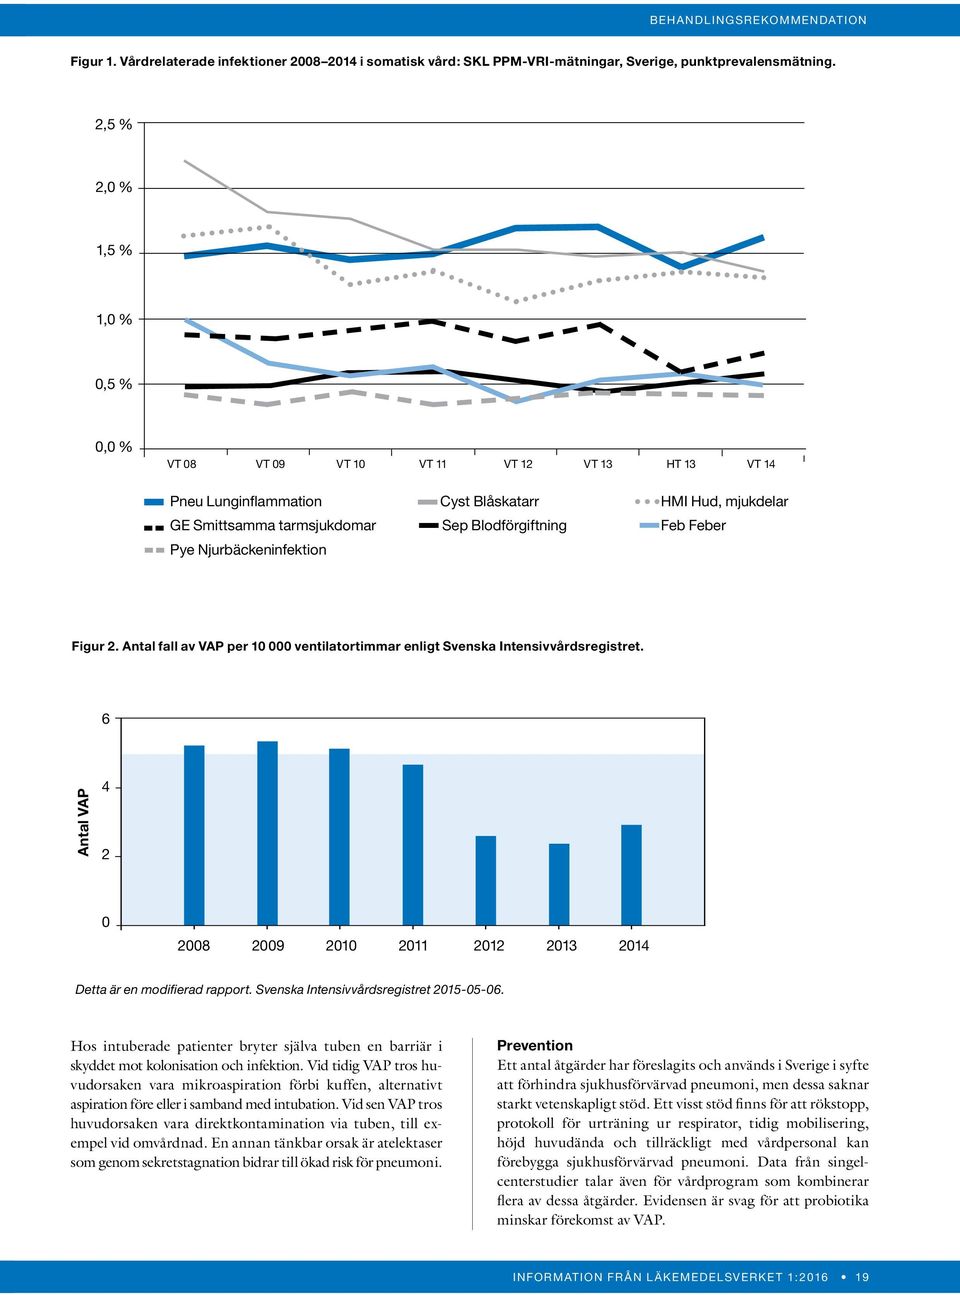 Pye Njurbäckeninfektion Figur 2. Antal fall av VAP per 10 000 ventilatortimmar enligt Svenska Intensivvårdsregistret.